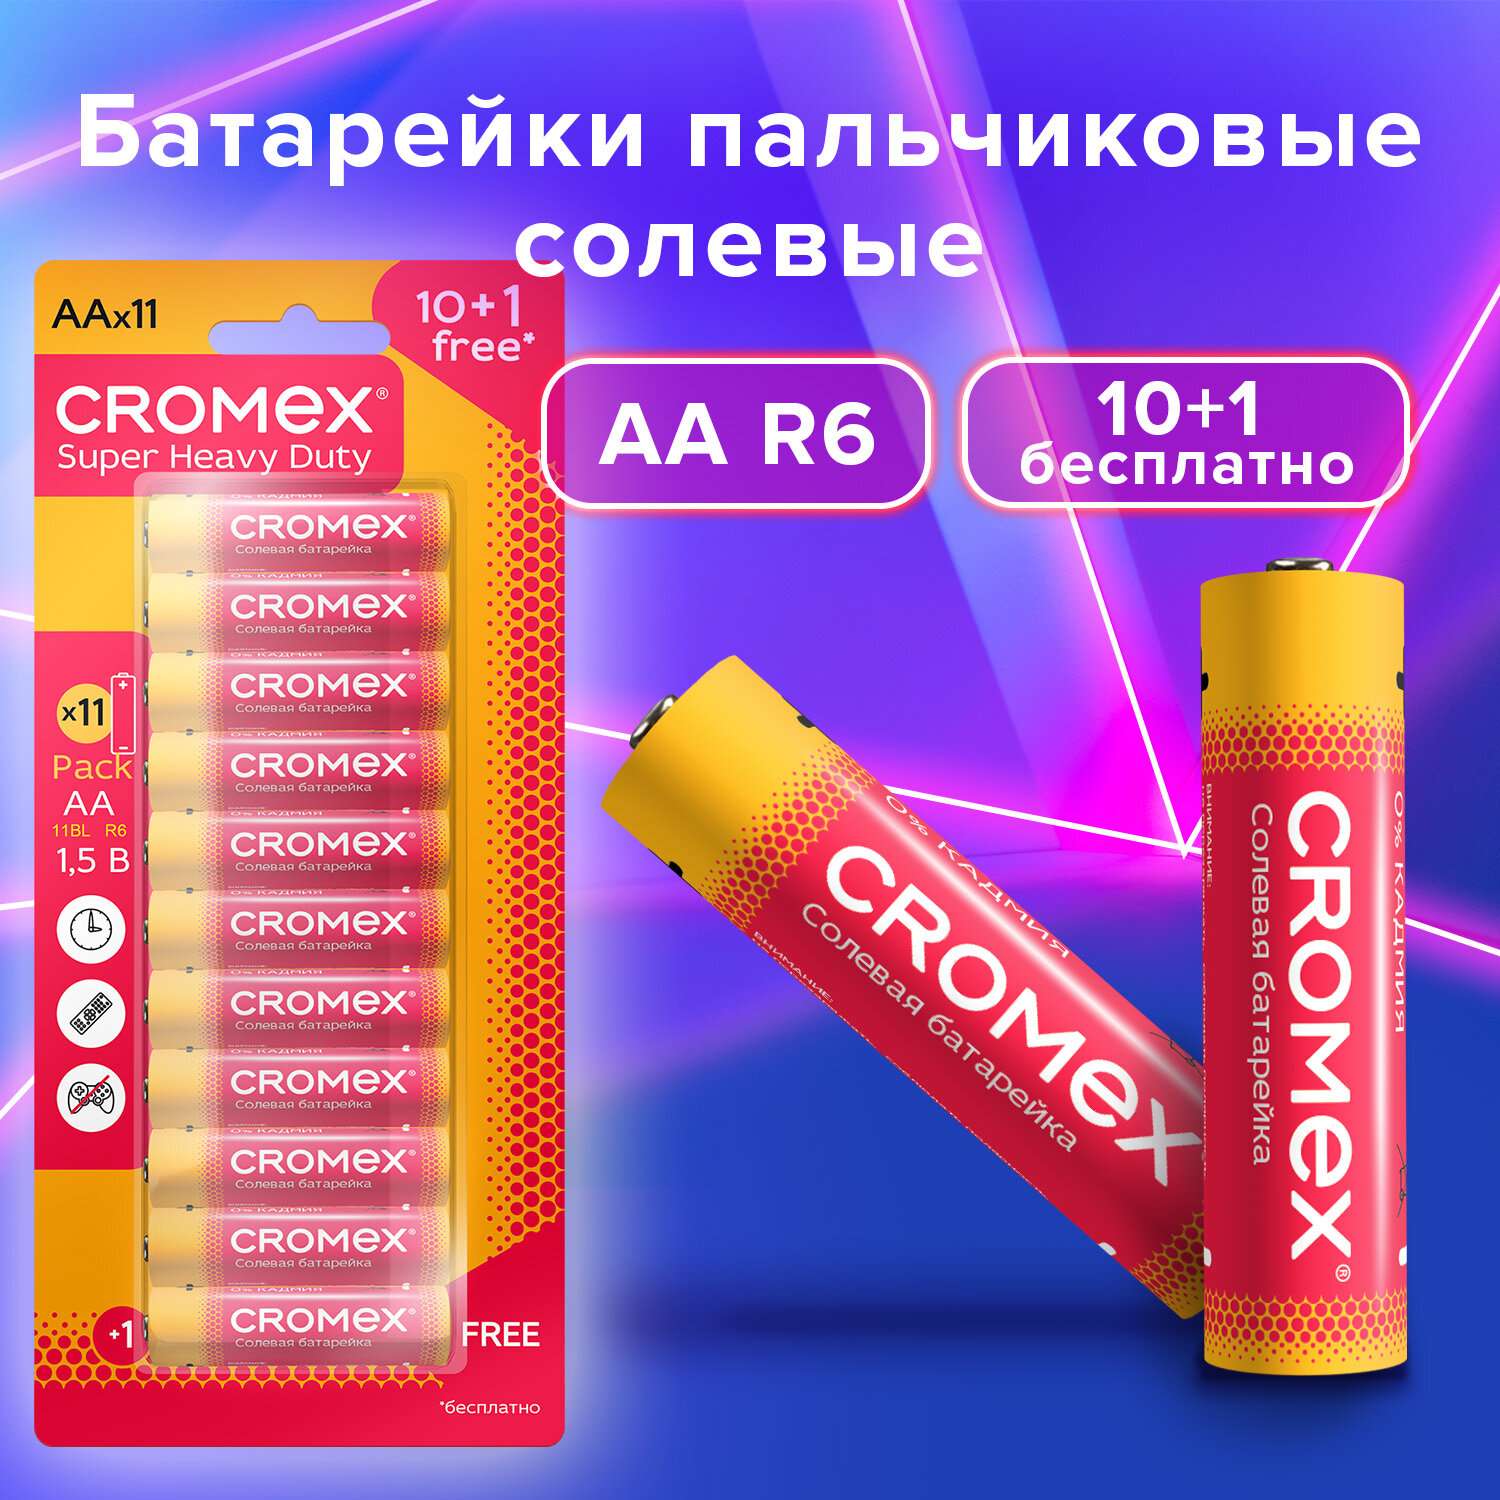 Батарейки солевые CROMEX пальчиковые AA набор 11 штук для весов часов фонарика - фото 2